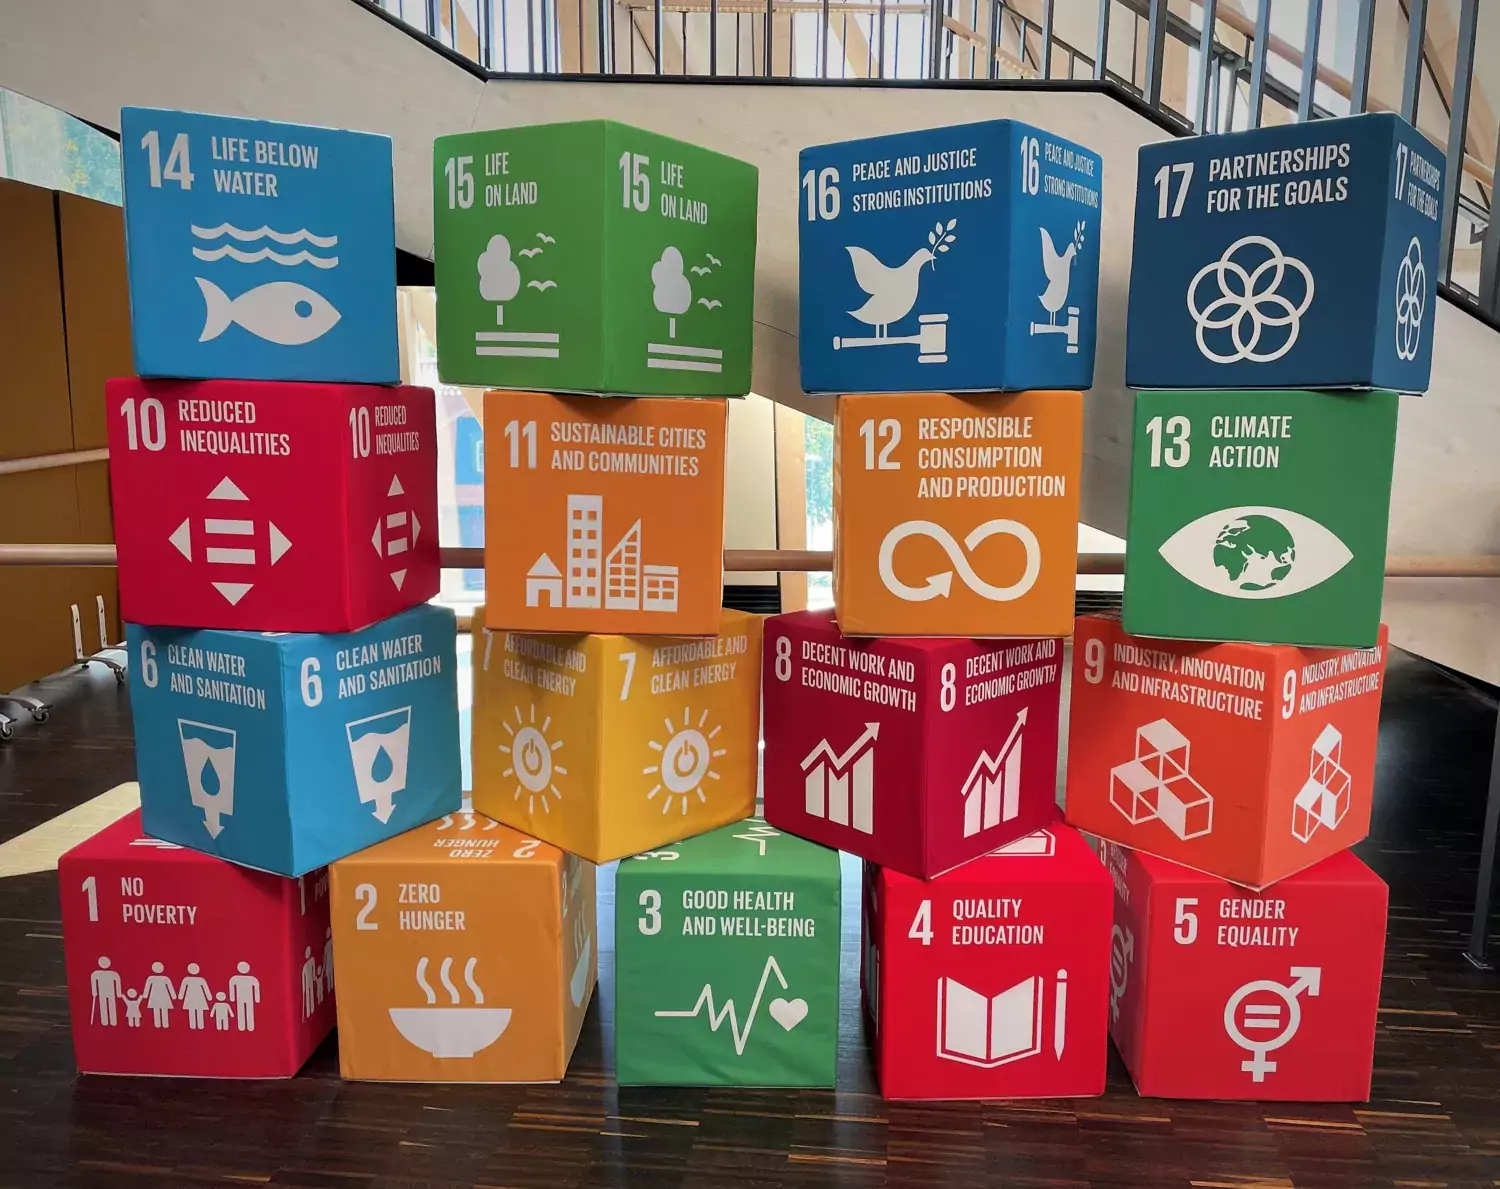 Staplade lådor med symboler för olika hållbarhetsområden enligt Agenda 2030.